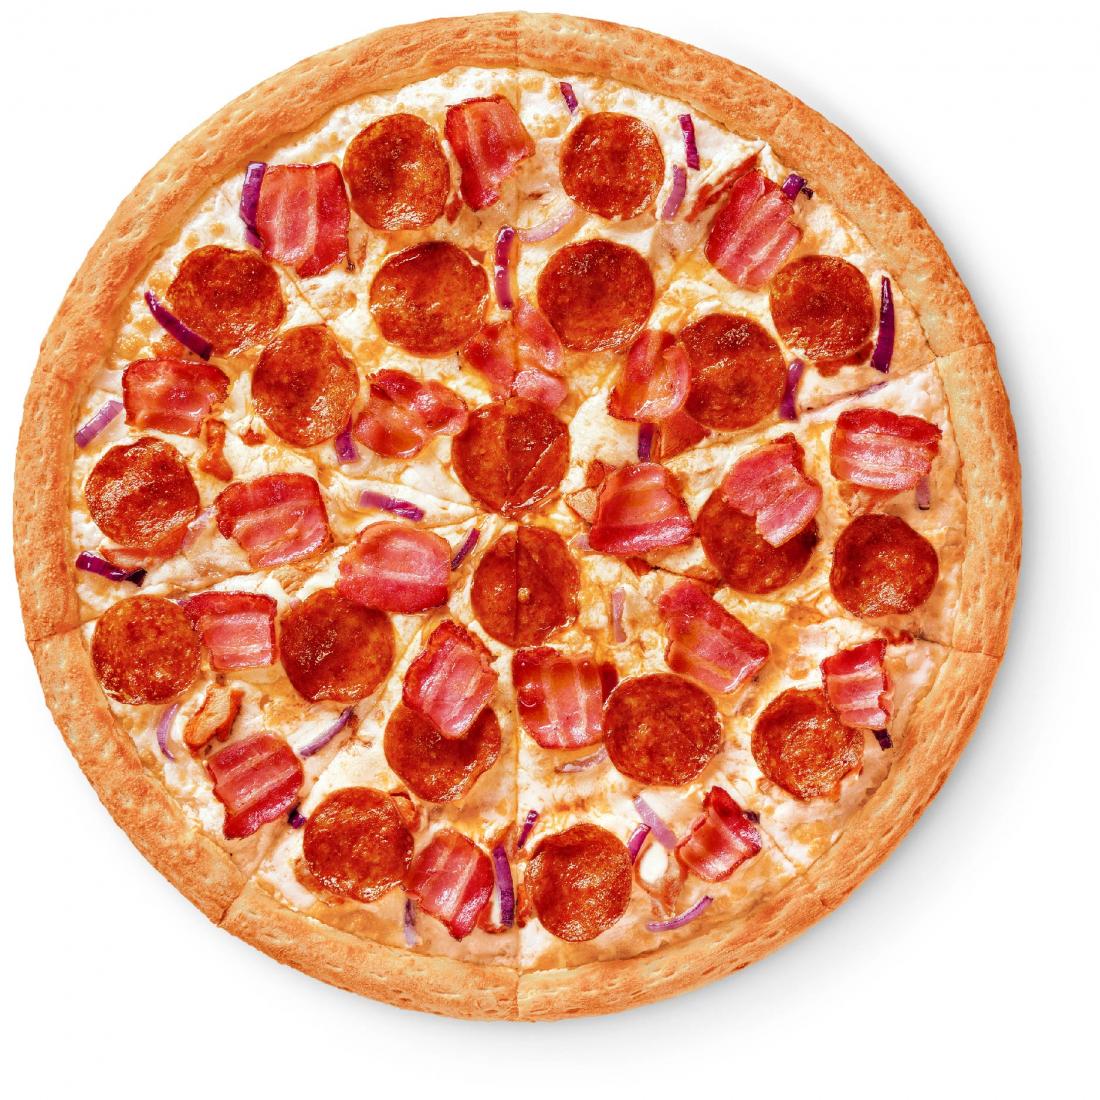 сколько калорий в куске пиццы пепперони из додо фото 80